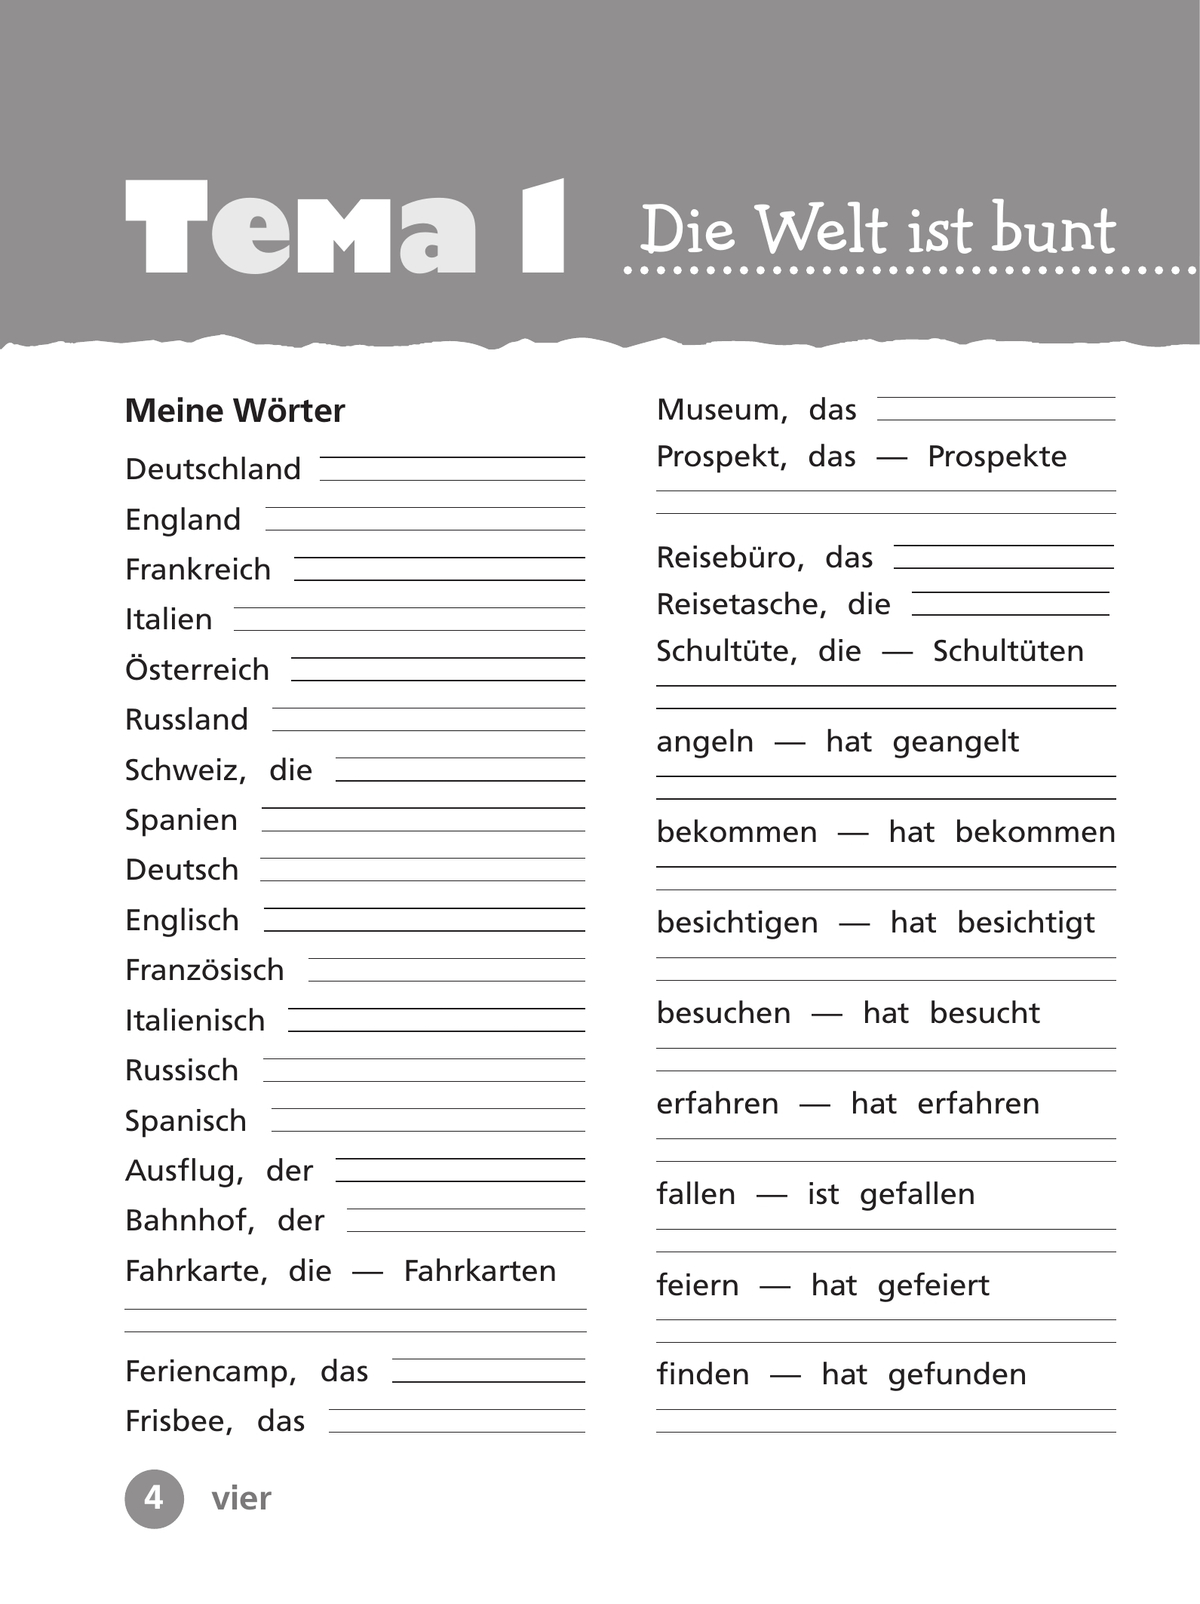 Немецкий язык. Рабочая тетрадь. 4 класс. В 2 ч. Часть 1 5